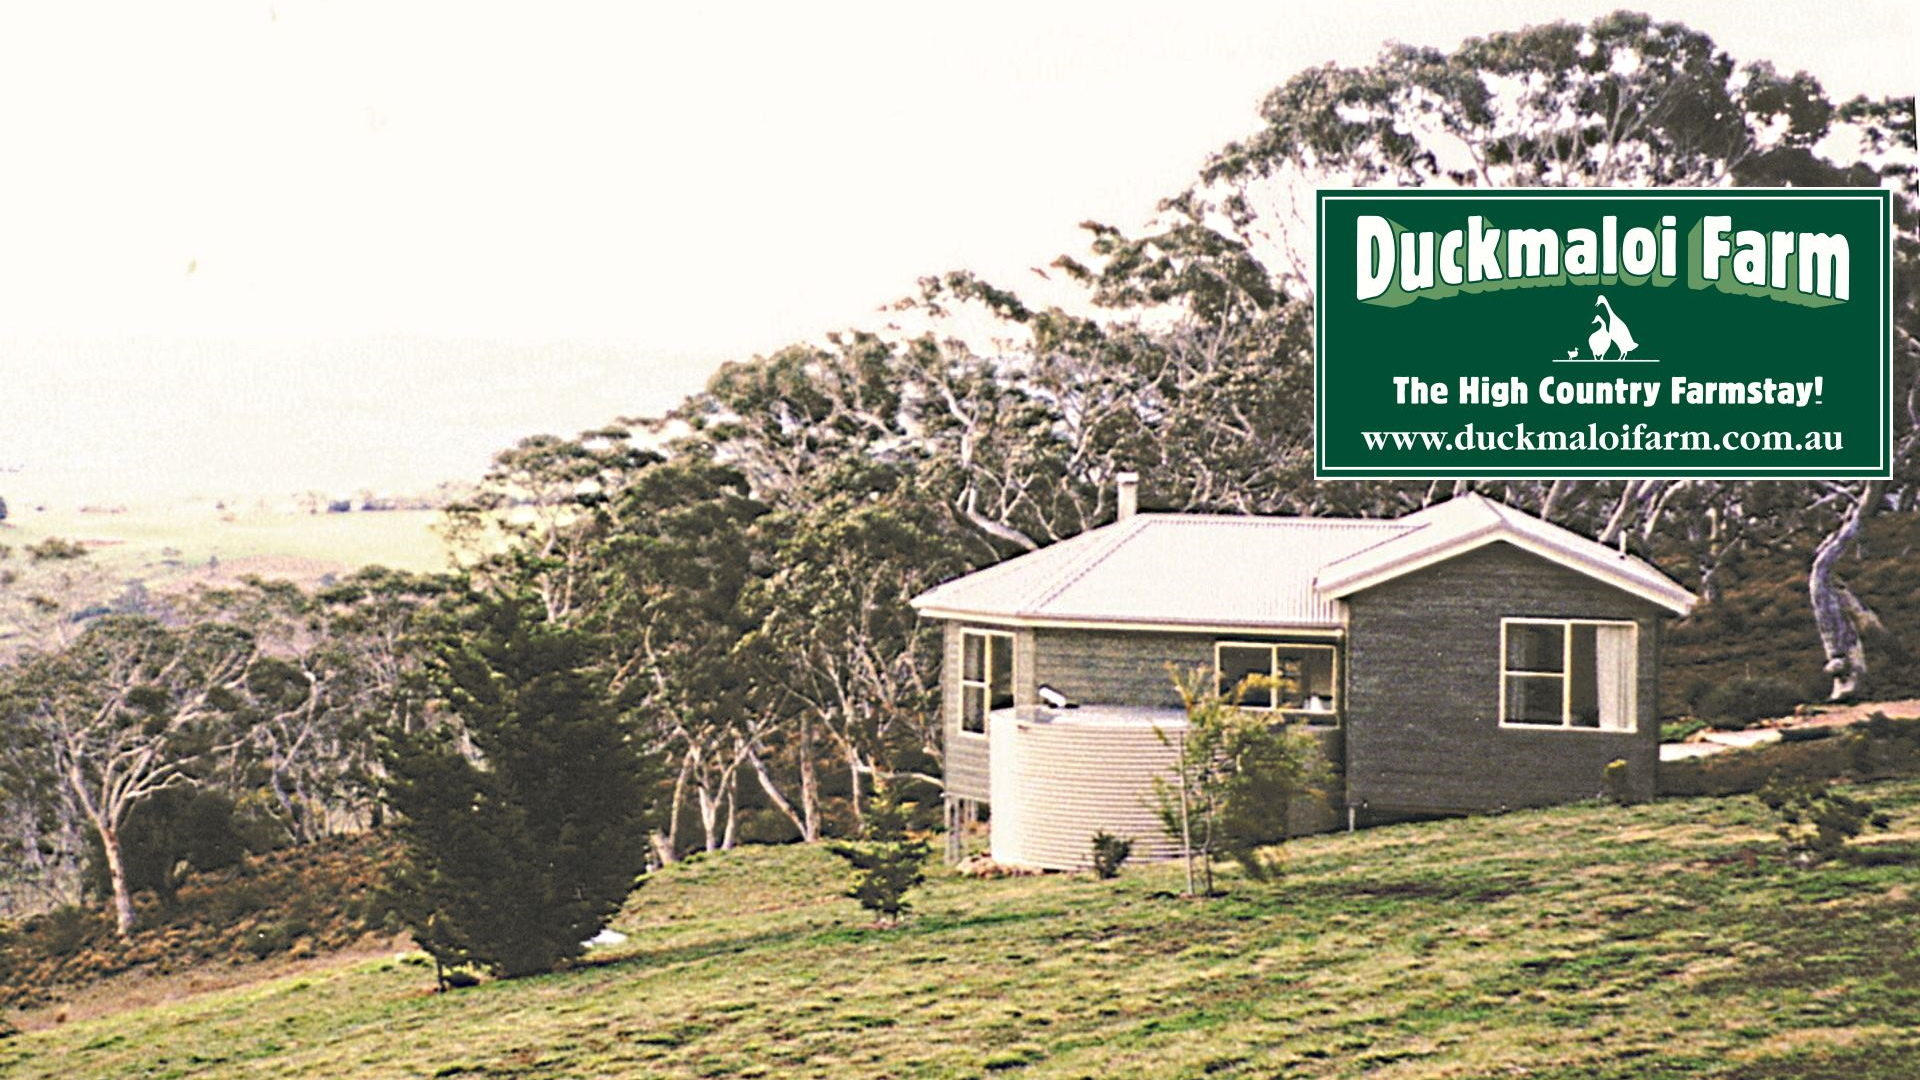 Duckmaloi Farm